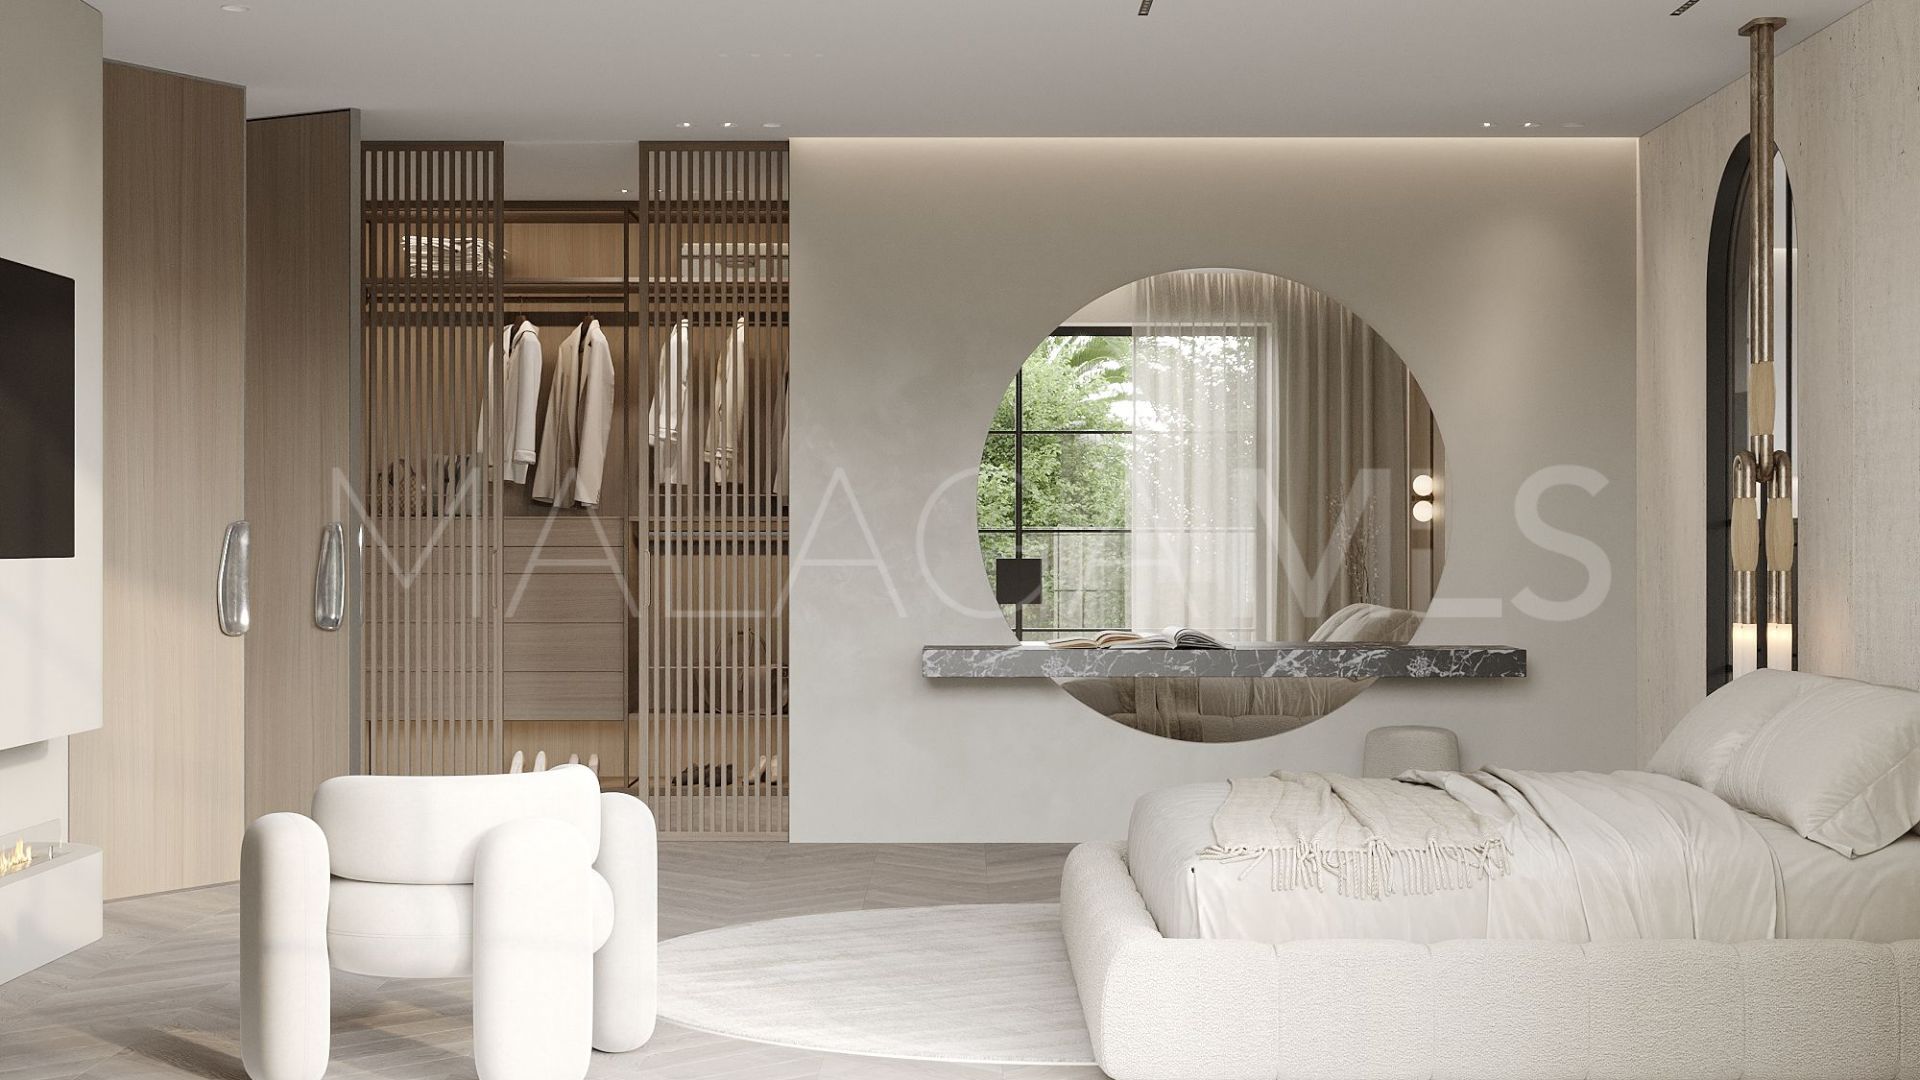 4 bedrooms villa in Las Brisas del Golf for sale